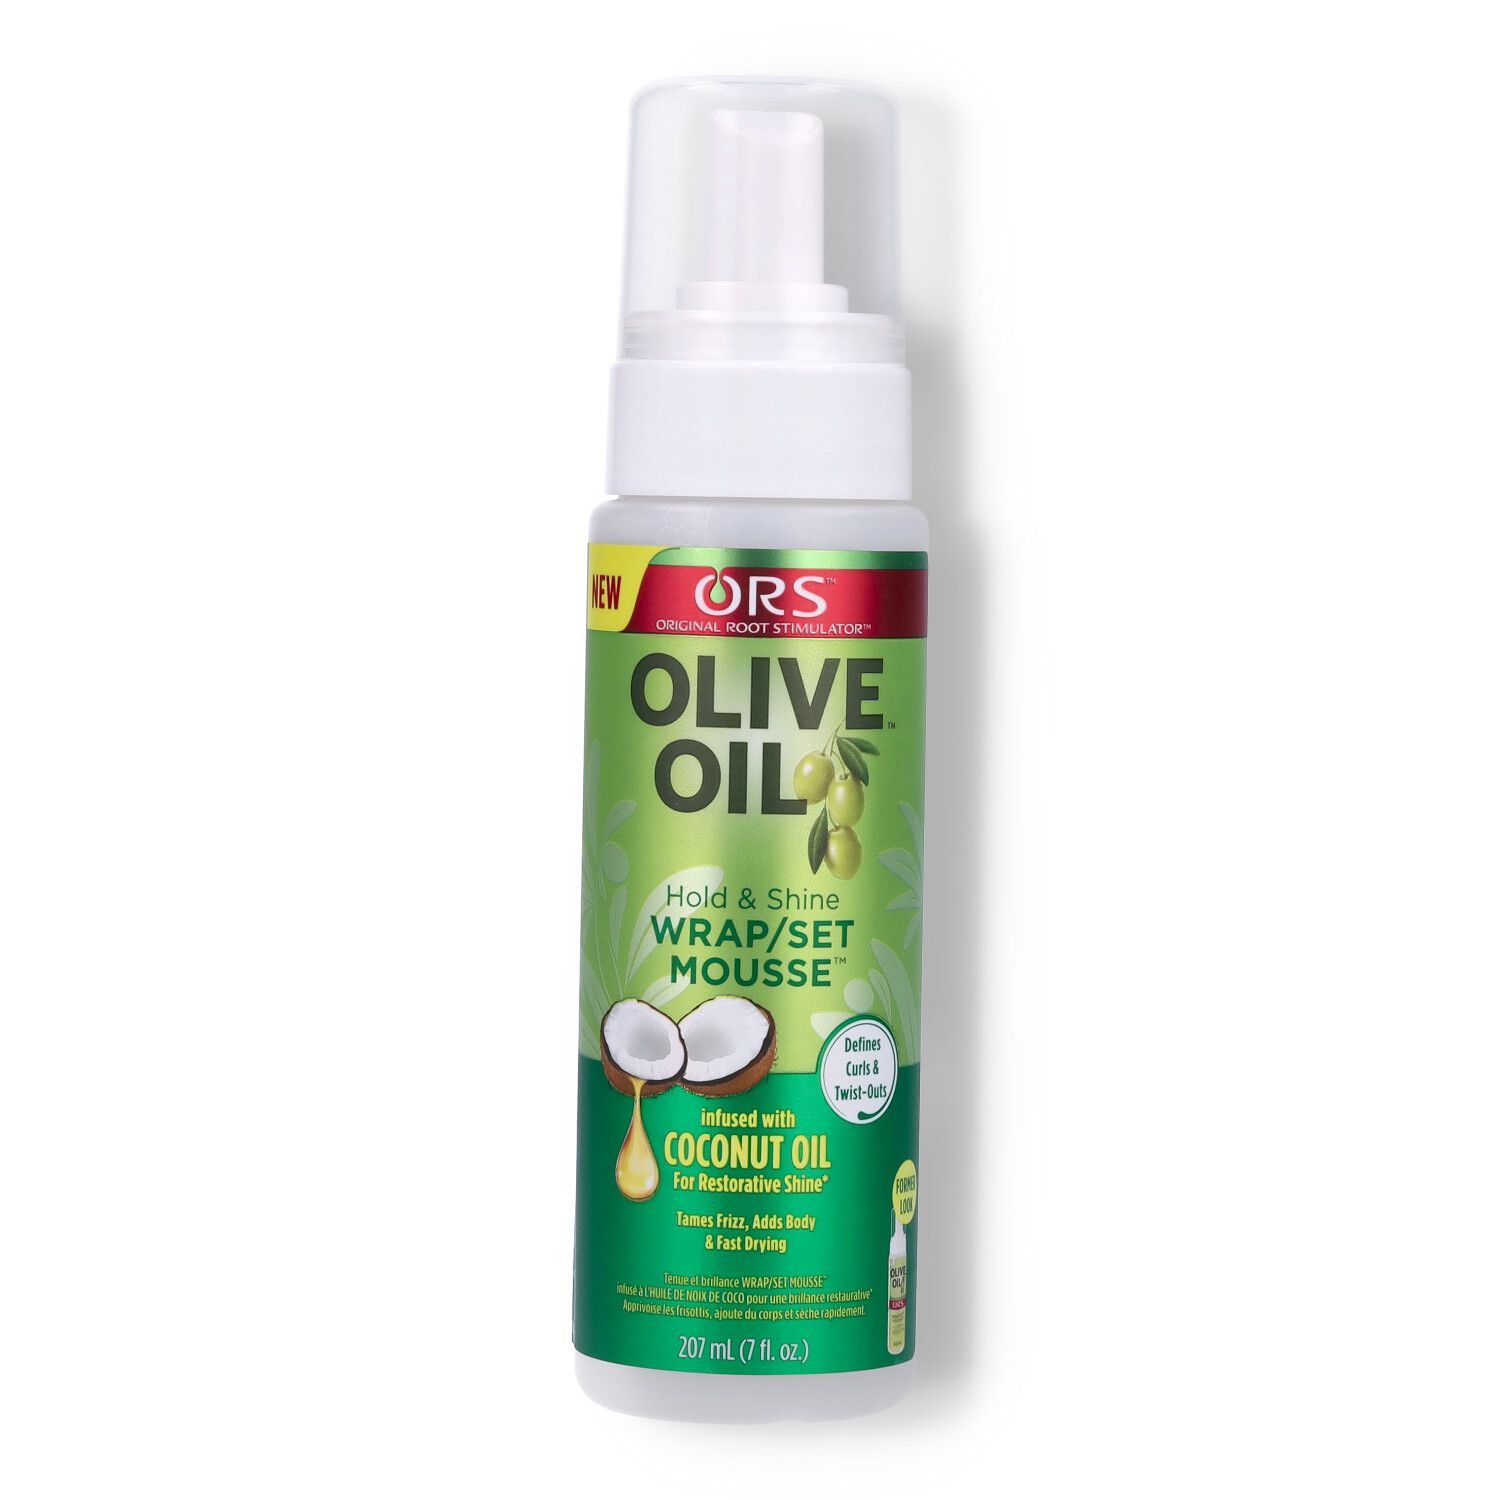 ORS Olive Oil Wrap/set Mousse - 7oz